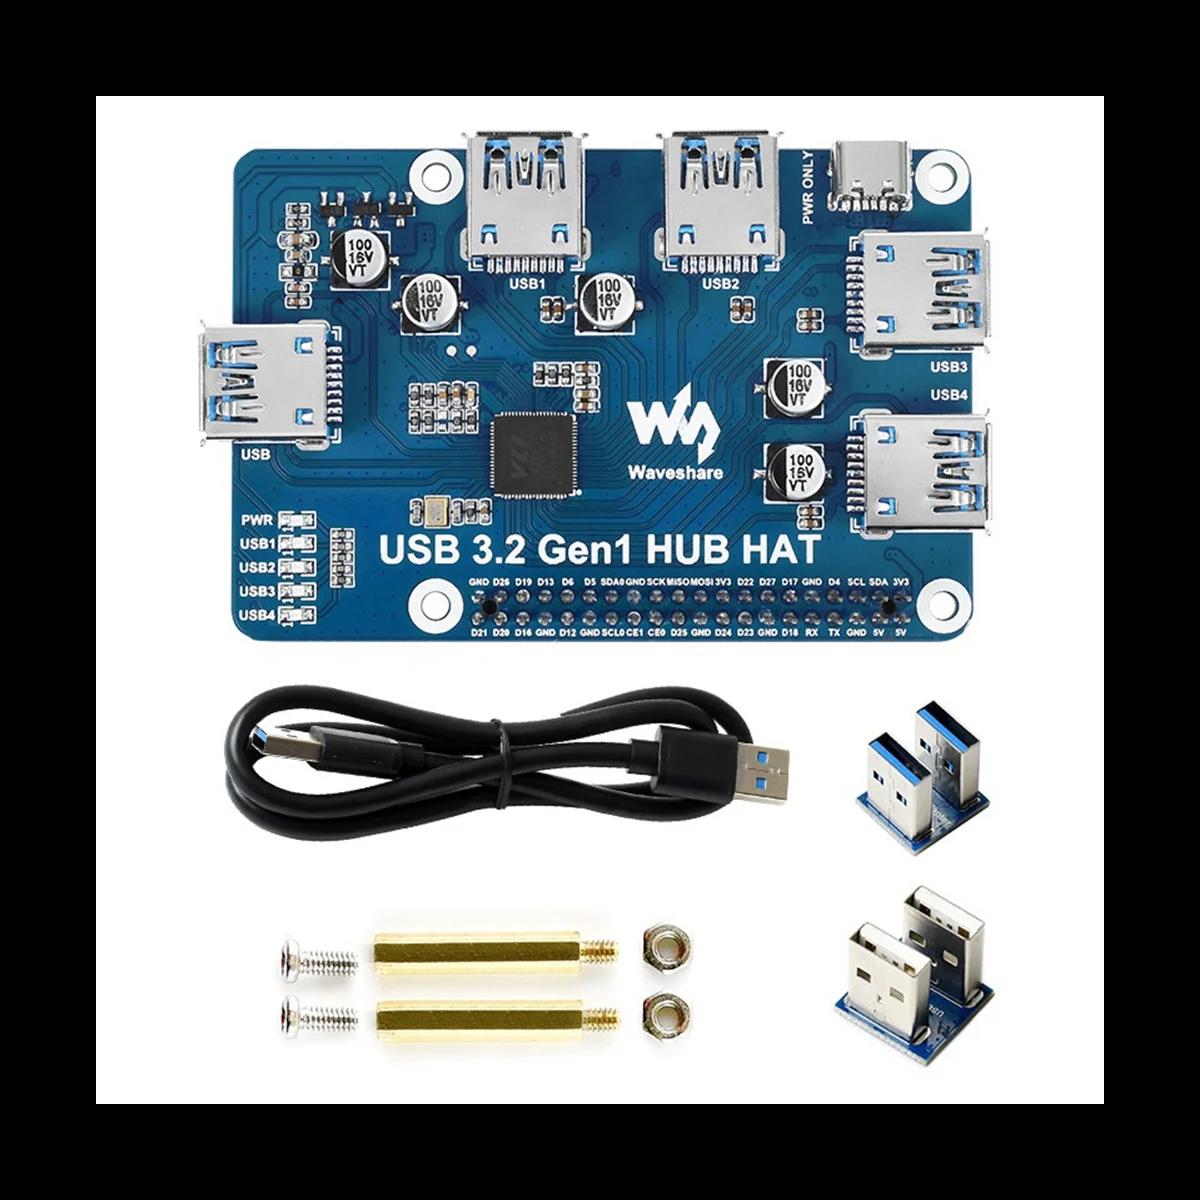 Waveshare USB 3.2 Gen1  HAT,   4B 3B + 3B 2B  W WH,4 ä USB 3.0 Ȯ Ʈ, ̹  ÷  ÷